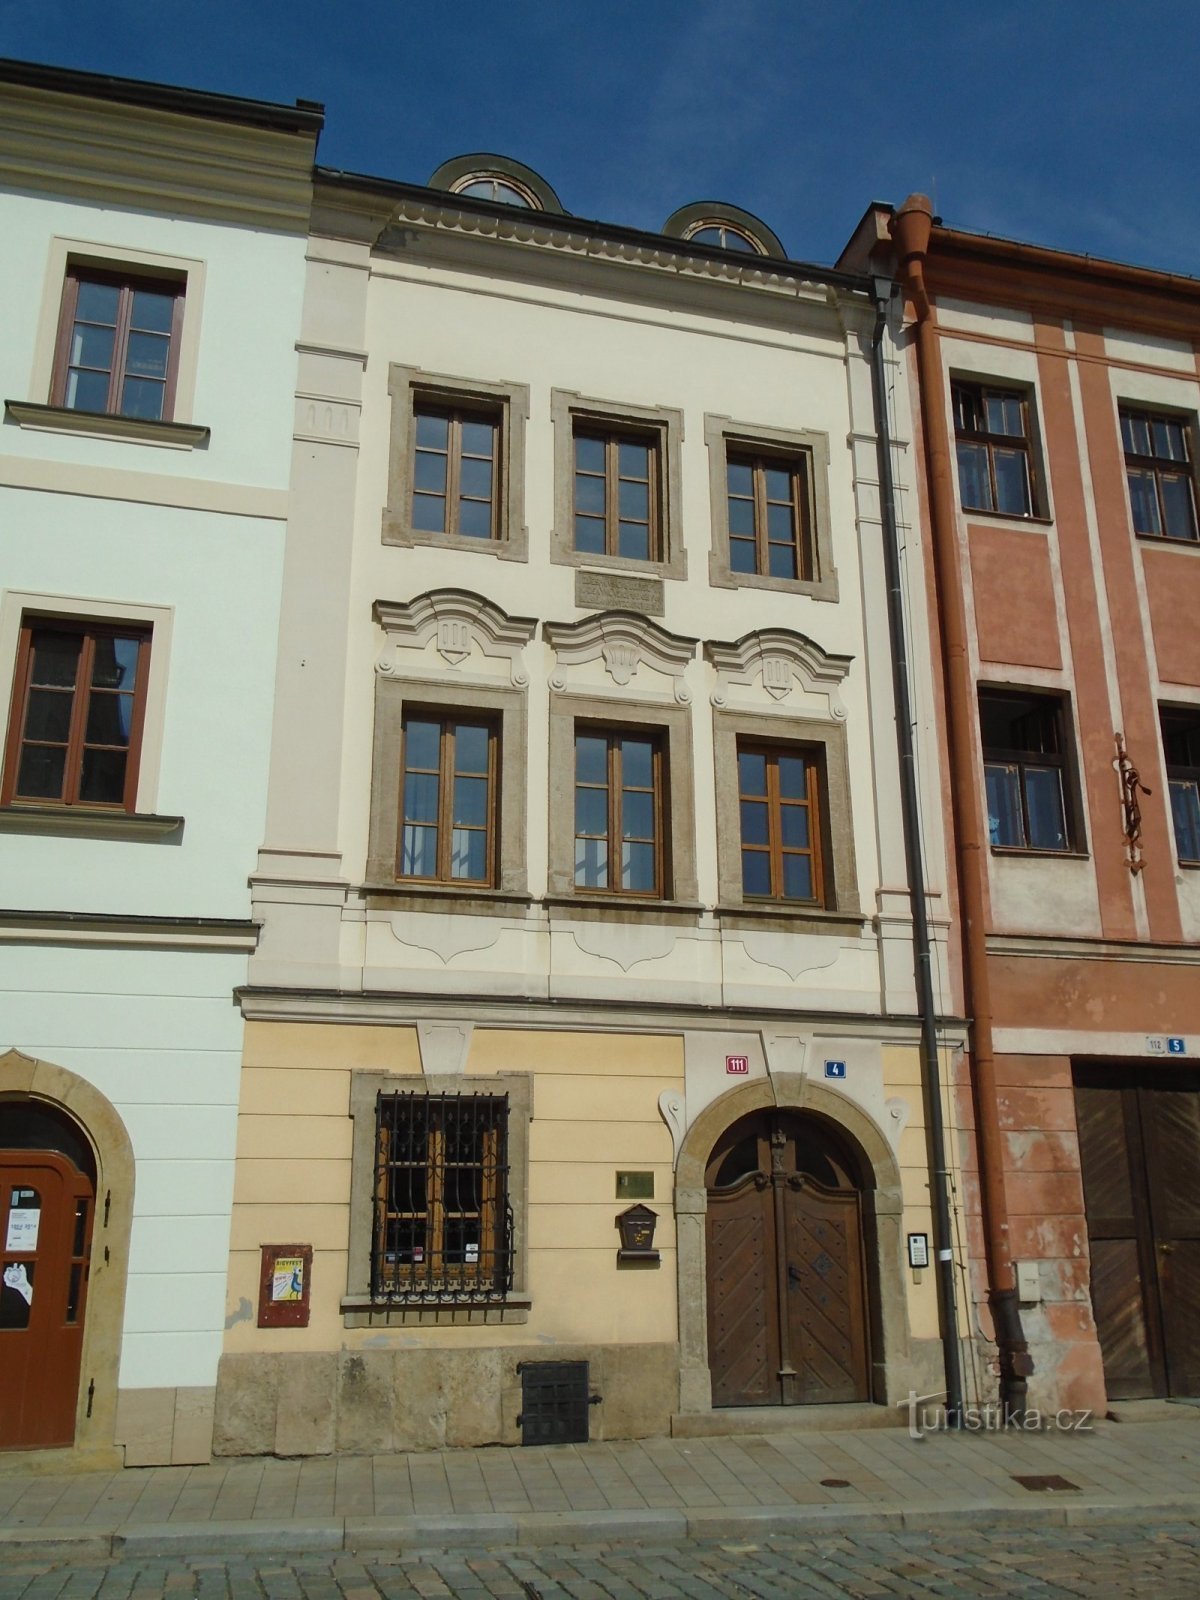 Malé náměstí no. 111 (Hradec Králové, 16.9.2018. huhtikuuta XNUMX)